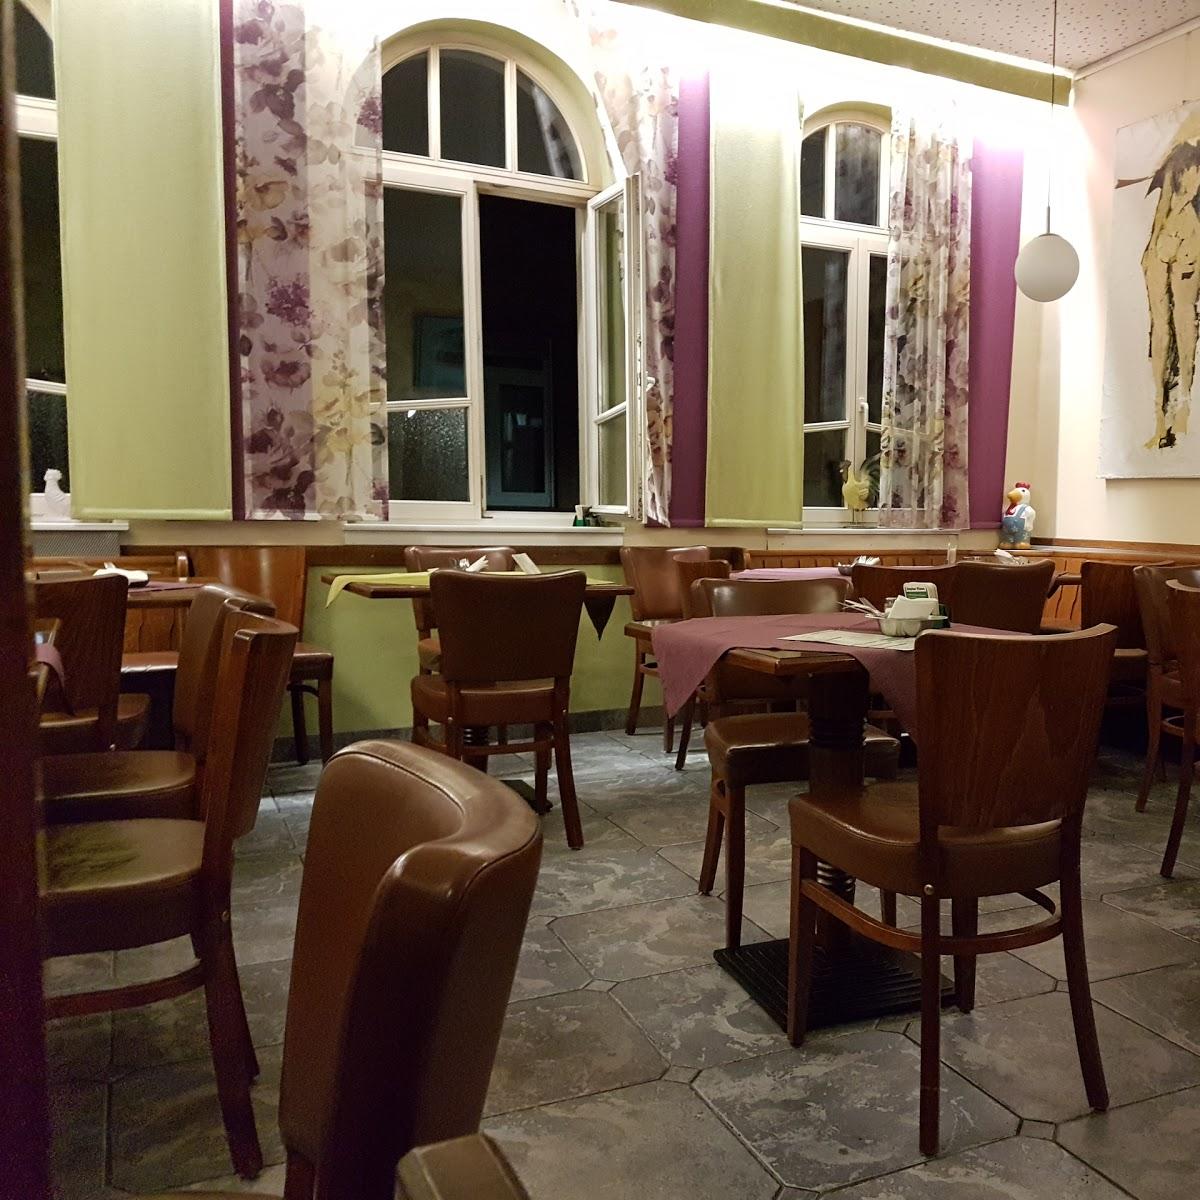 Restaurant "Gasthaus 3 Mohren" in  Kandel